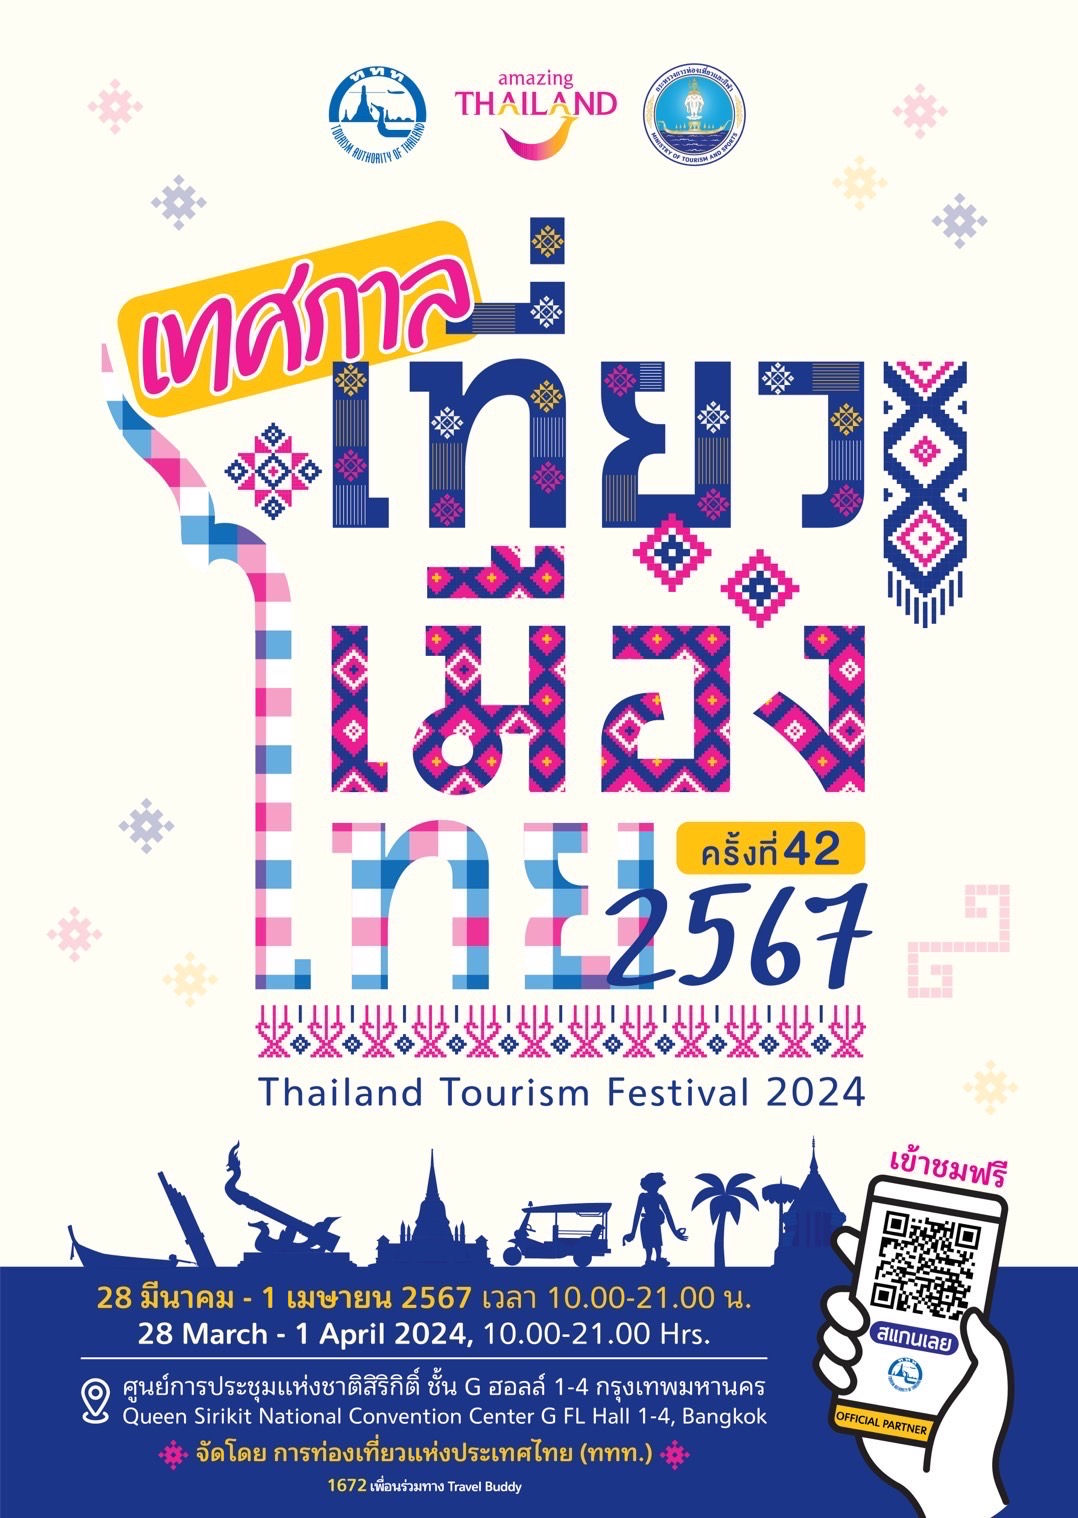 ไปรษณีย์ไทย ยกขบวนแสตมป์สิ่งสะสม โปสการ์ดออนไลน์ พร้อมบริการส่งด่วน EMS ที่งานเที่ยวเมืองไทย ครั้งที่ 42 วันนี้ - 1 เม.ย นี้